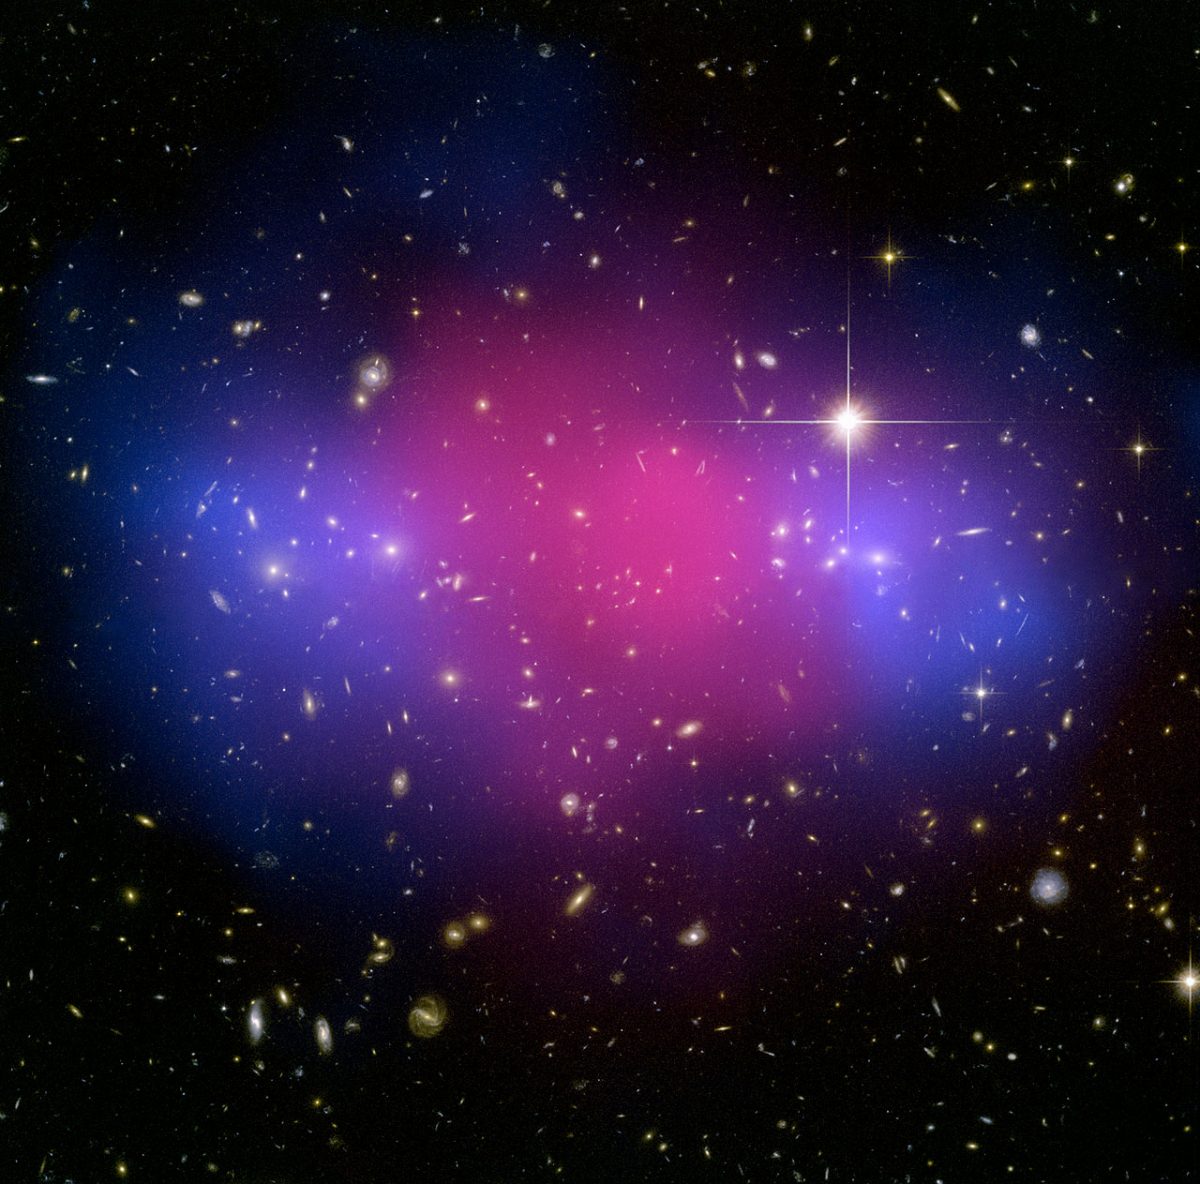 くじら座にある銀河団「MACSJ0025」。青紫色の部分が「暗黒物質（ダークマター）」の存在を示している（Credit: NASA, ESA, CXC, M. Bradac (University of California, Santa Barbara, USA), and S. Allen (Stanford University, USA).）